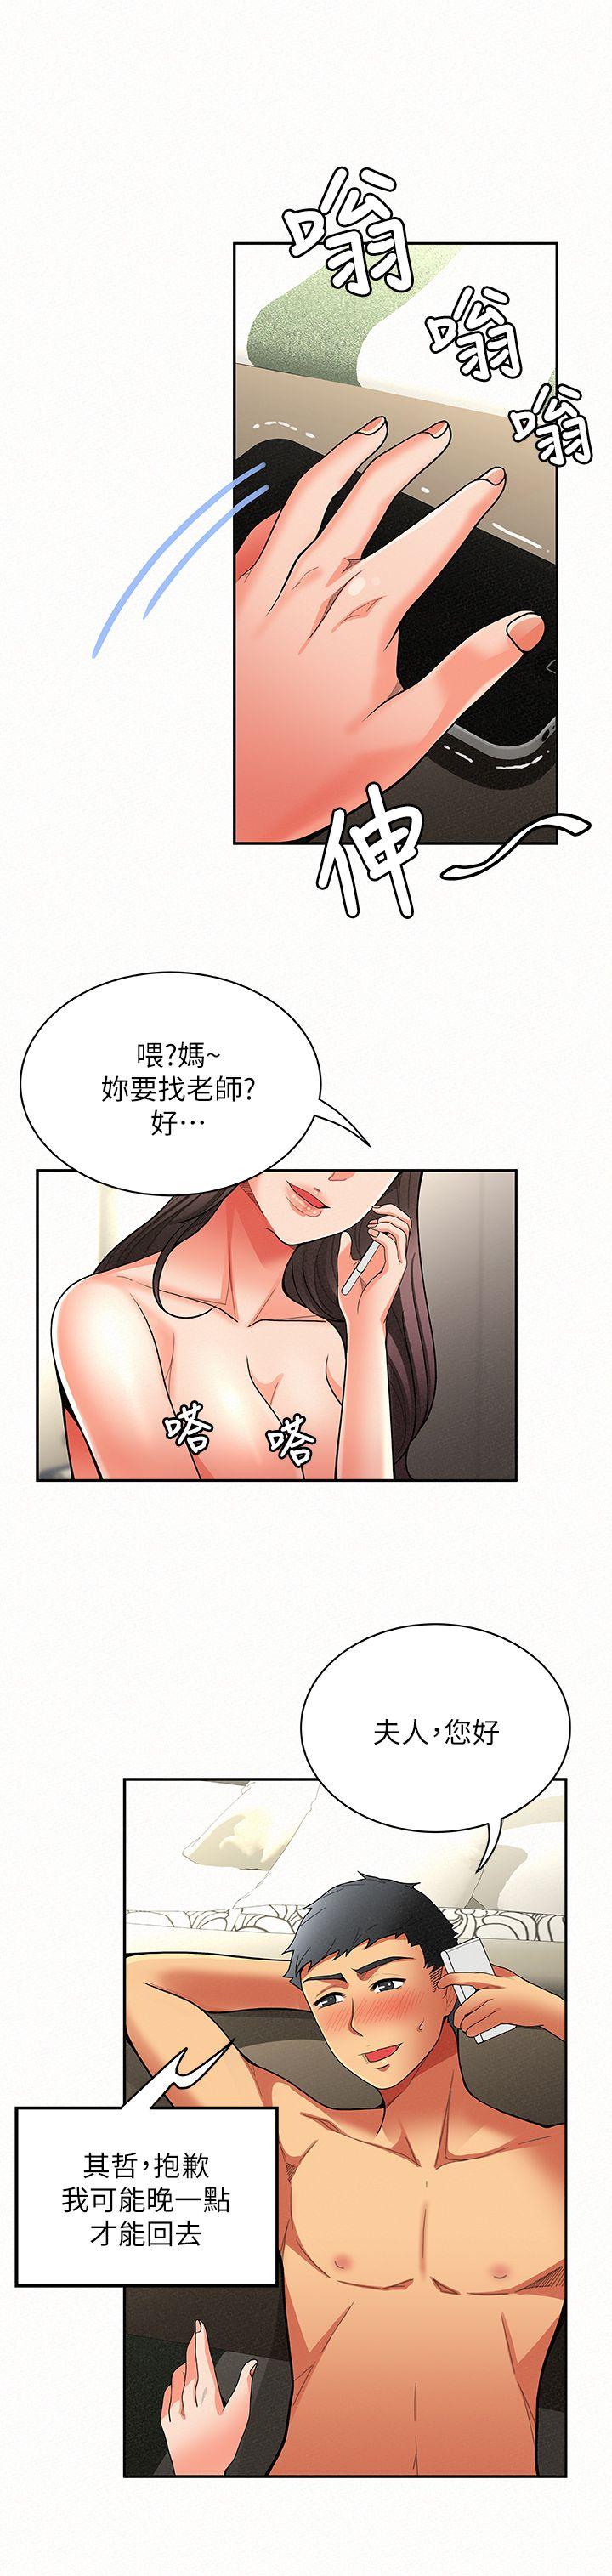 韩国污漫画 報告夫人 第6话-身体力行的家教课 32